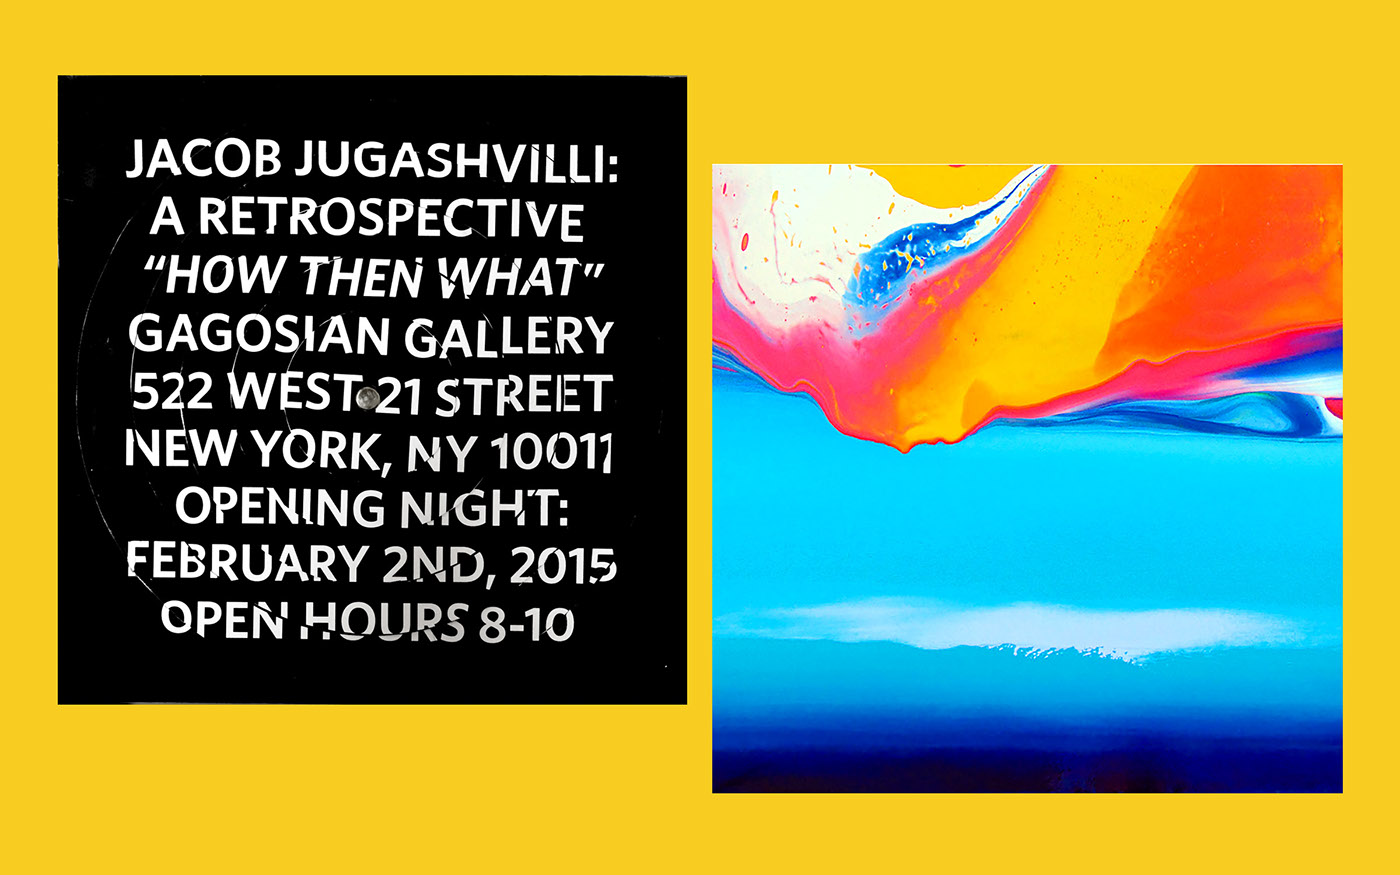 Invitation invite jacob jugashvilli fine art retrospective gallery Gagosian Gallery interactive